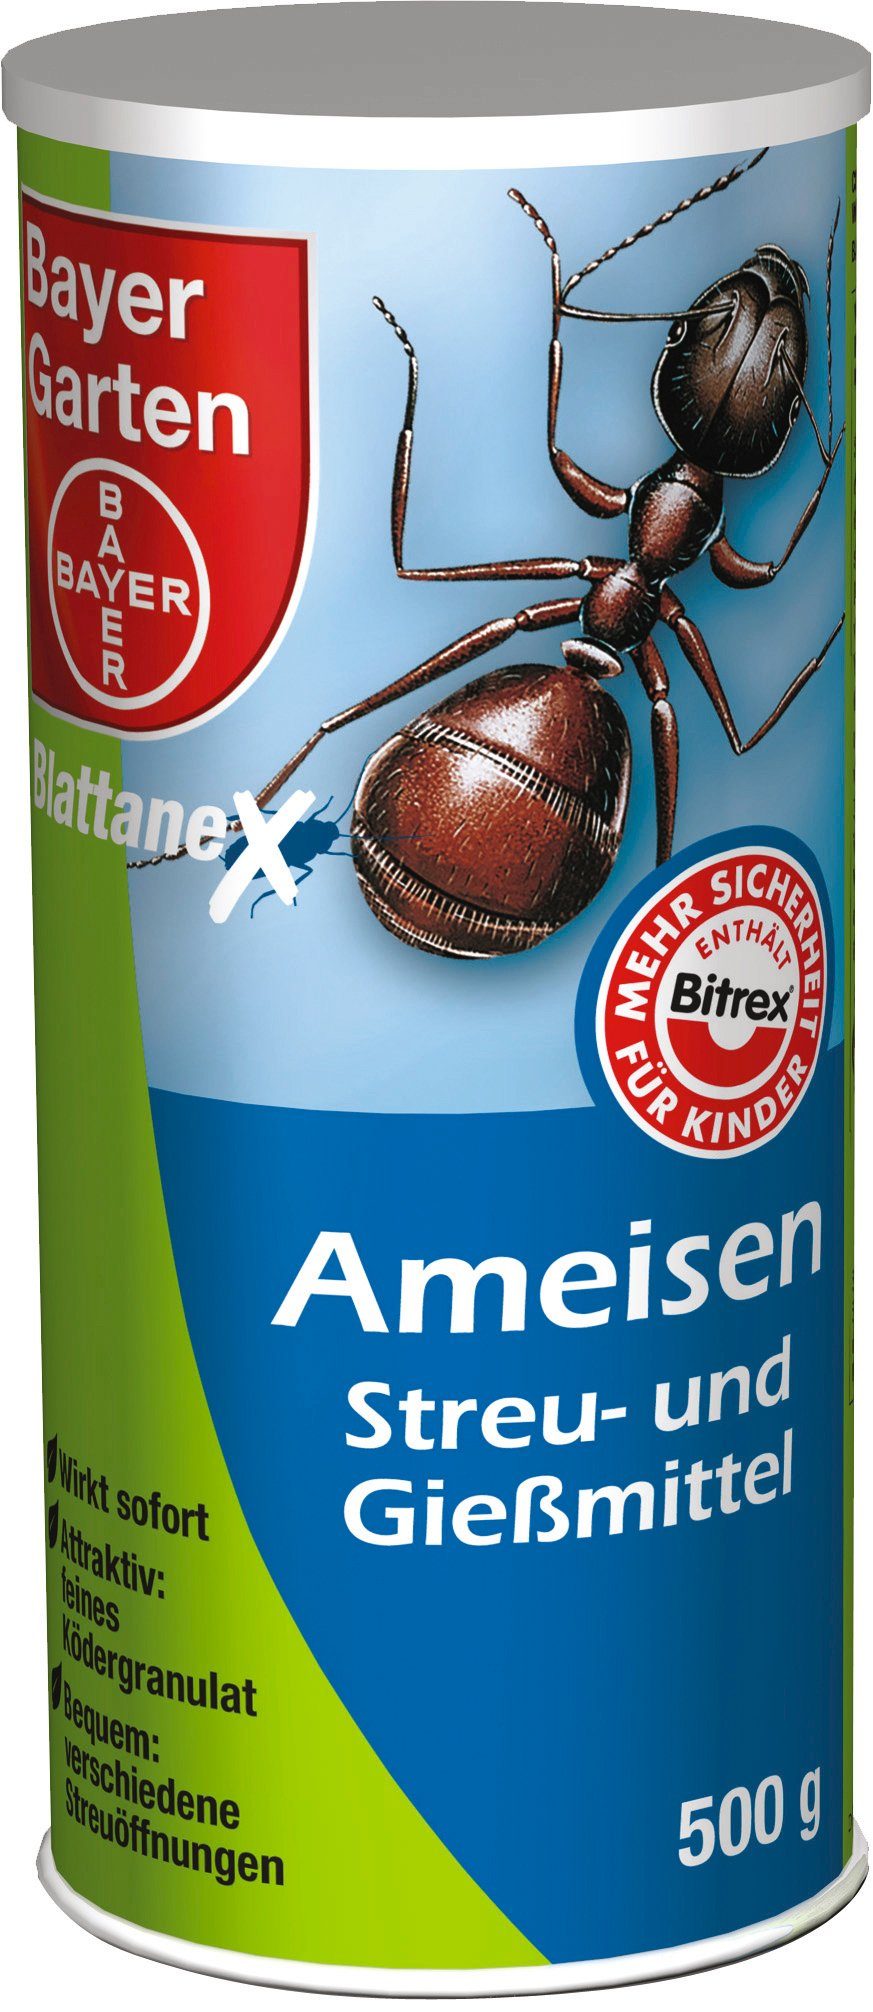 Bayer Garten Ameisengift »Streu- und Gießmittel«, 500 g online kaufen | OTTO